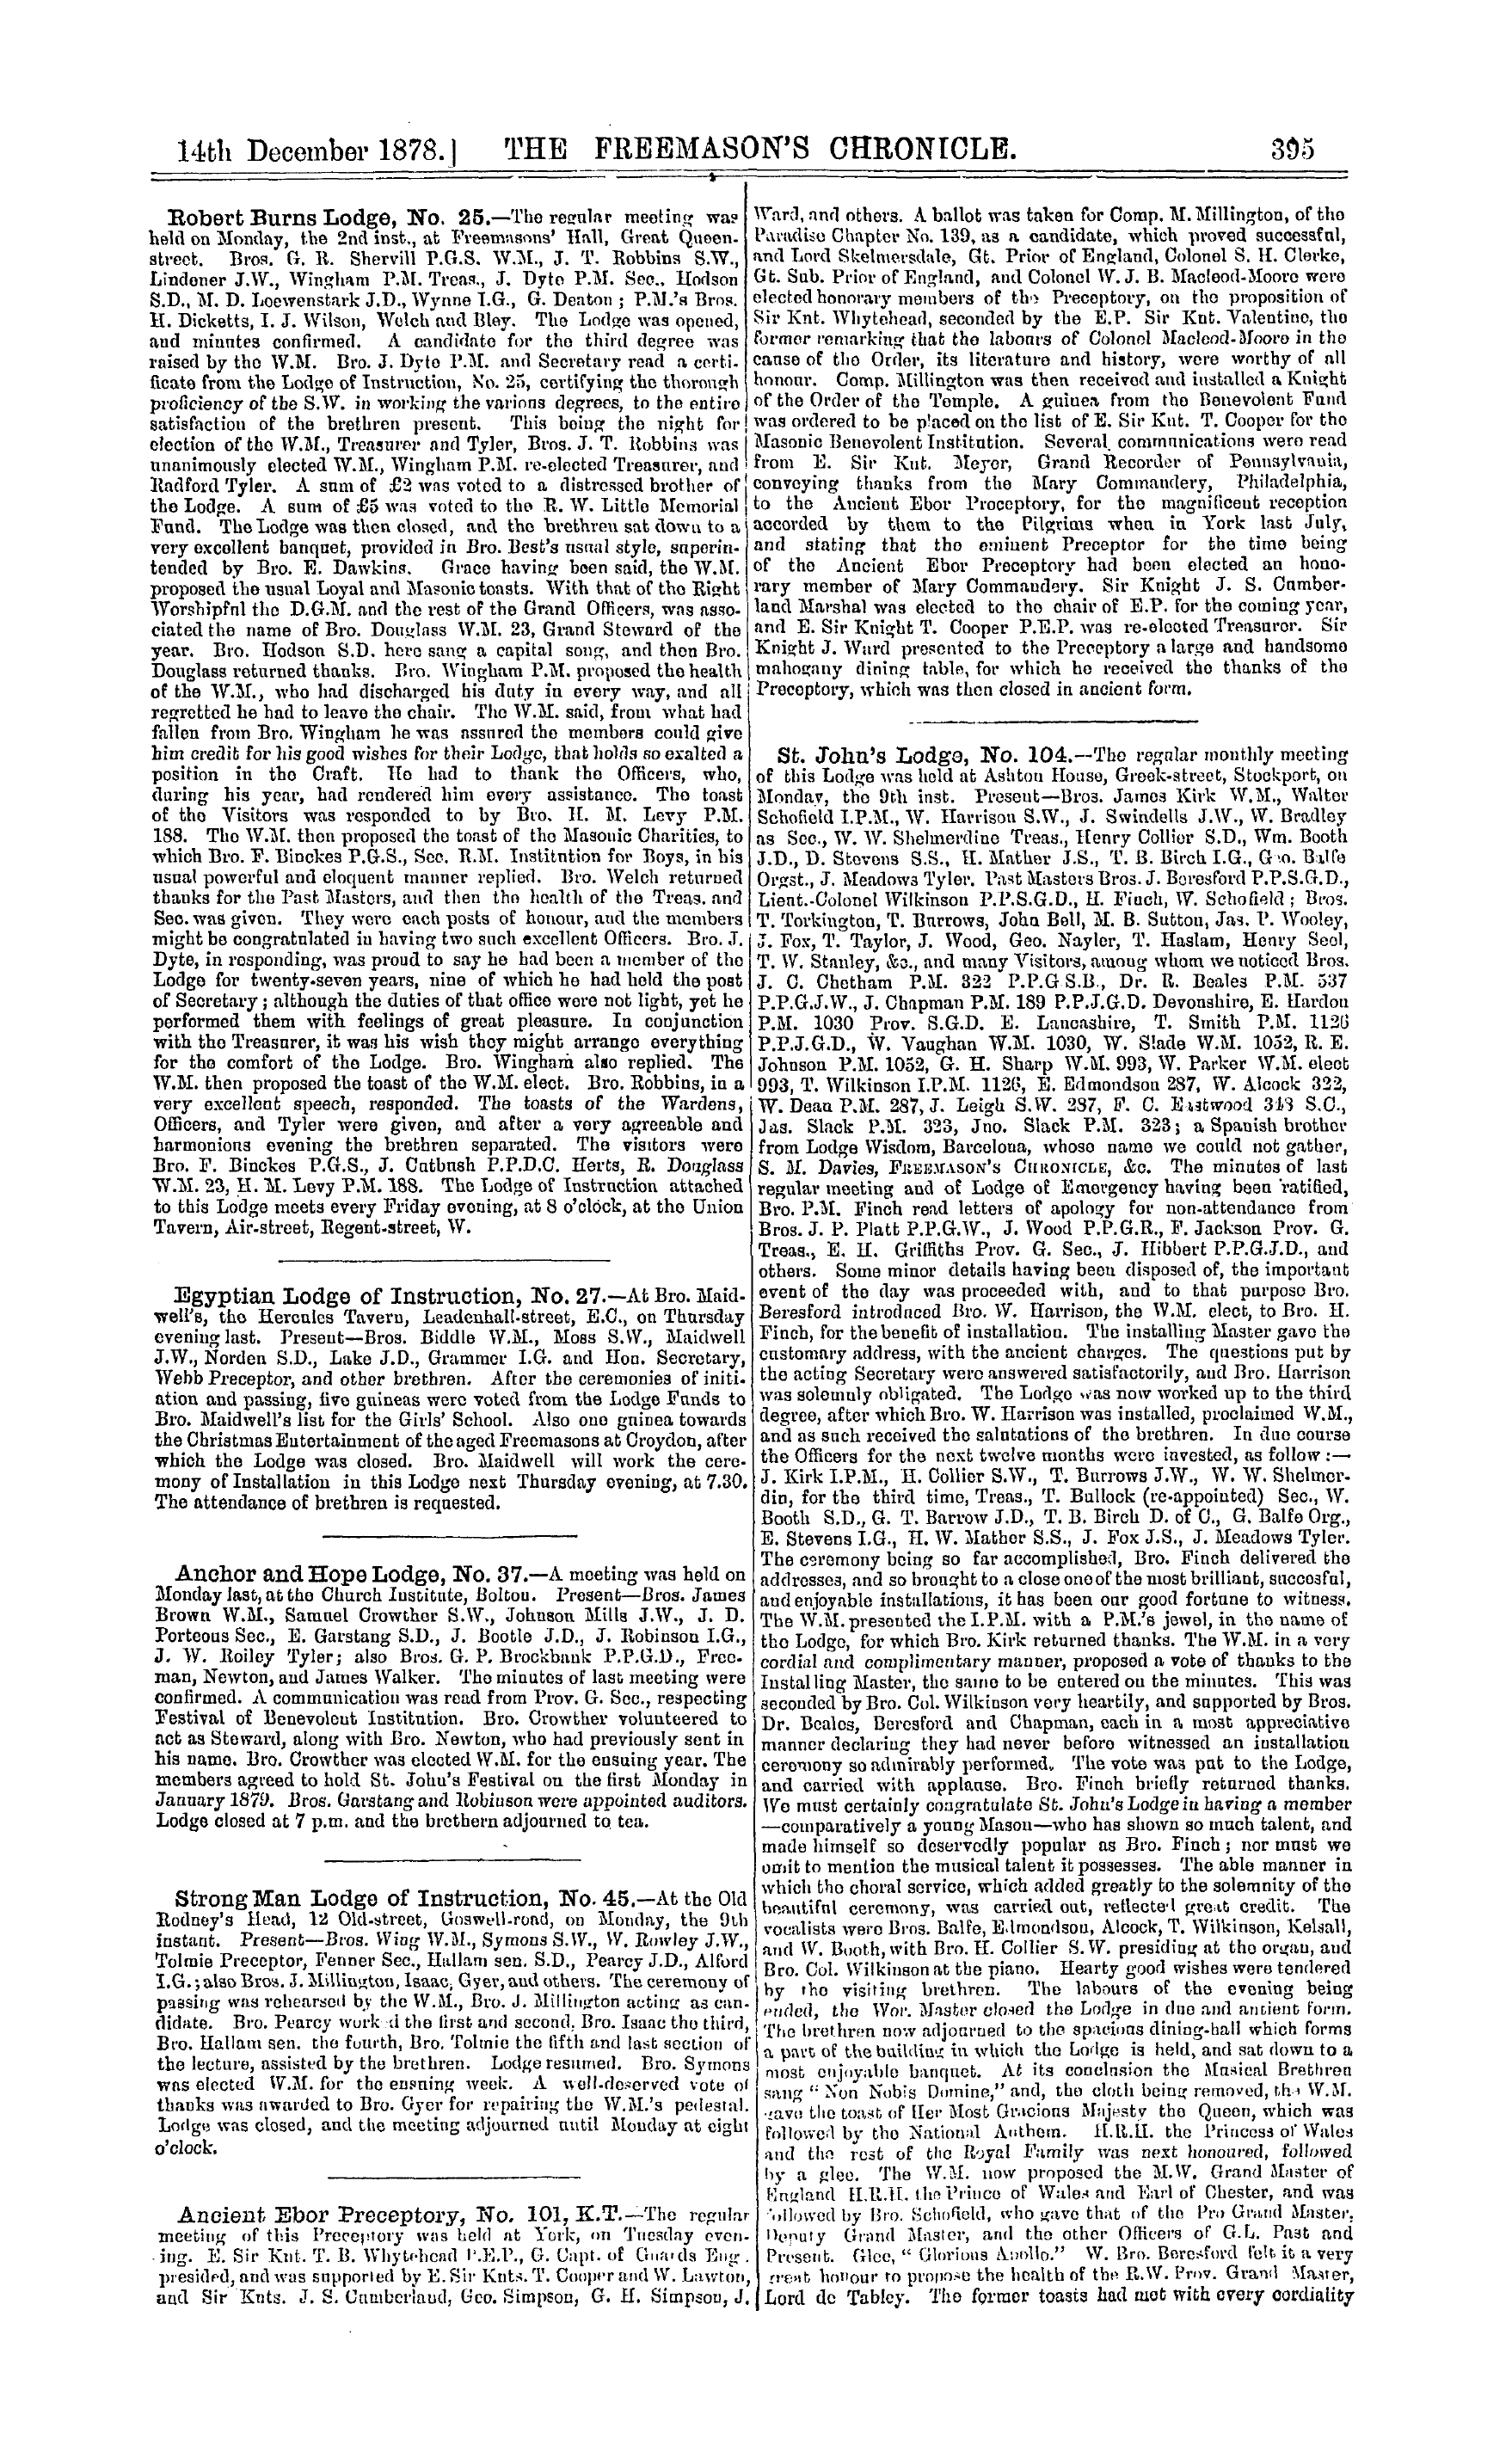 The Freemason's Chronicle: 1878-12-14 - Ar01500